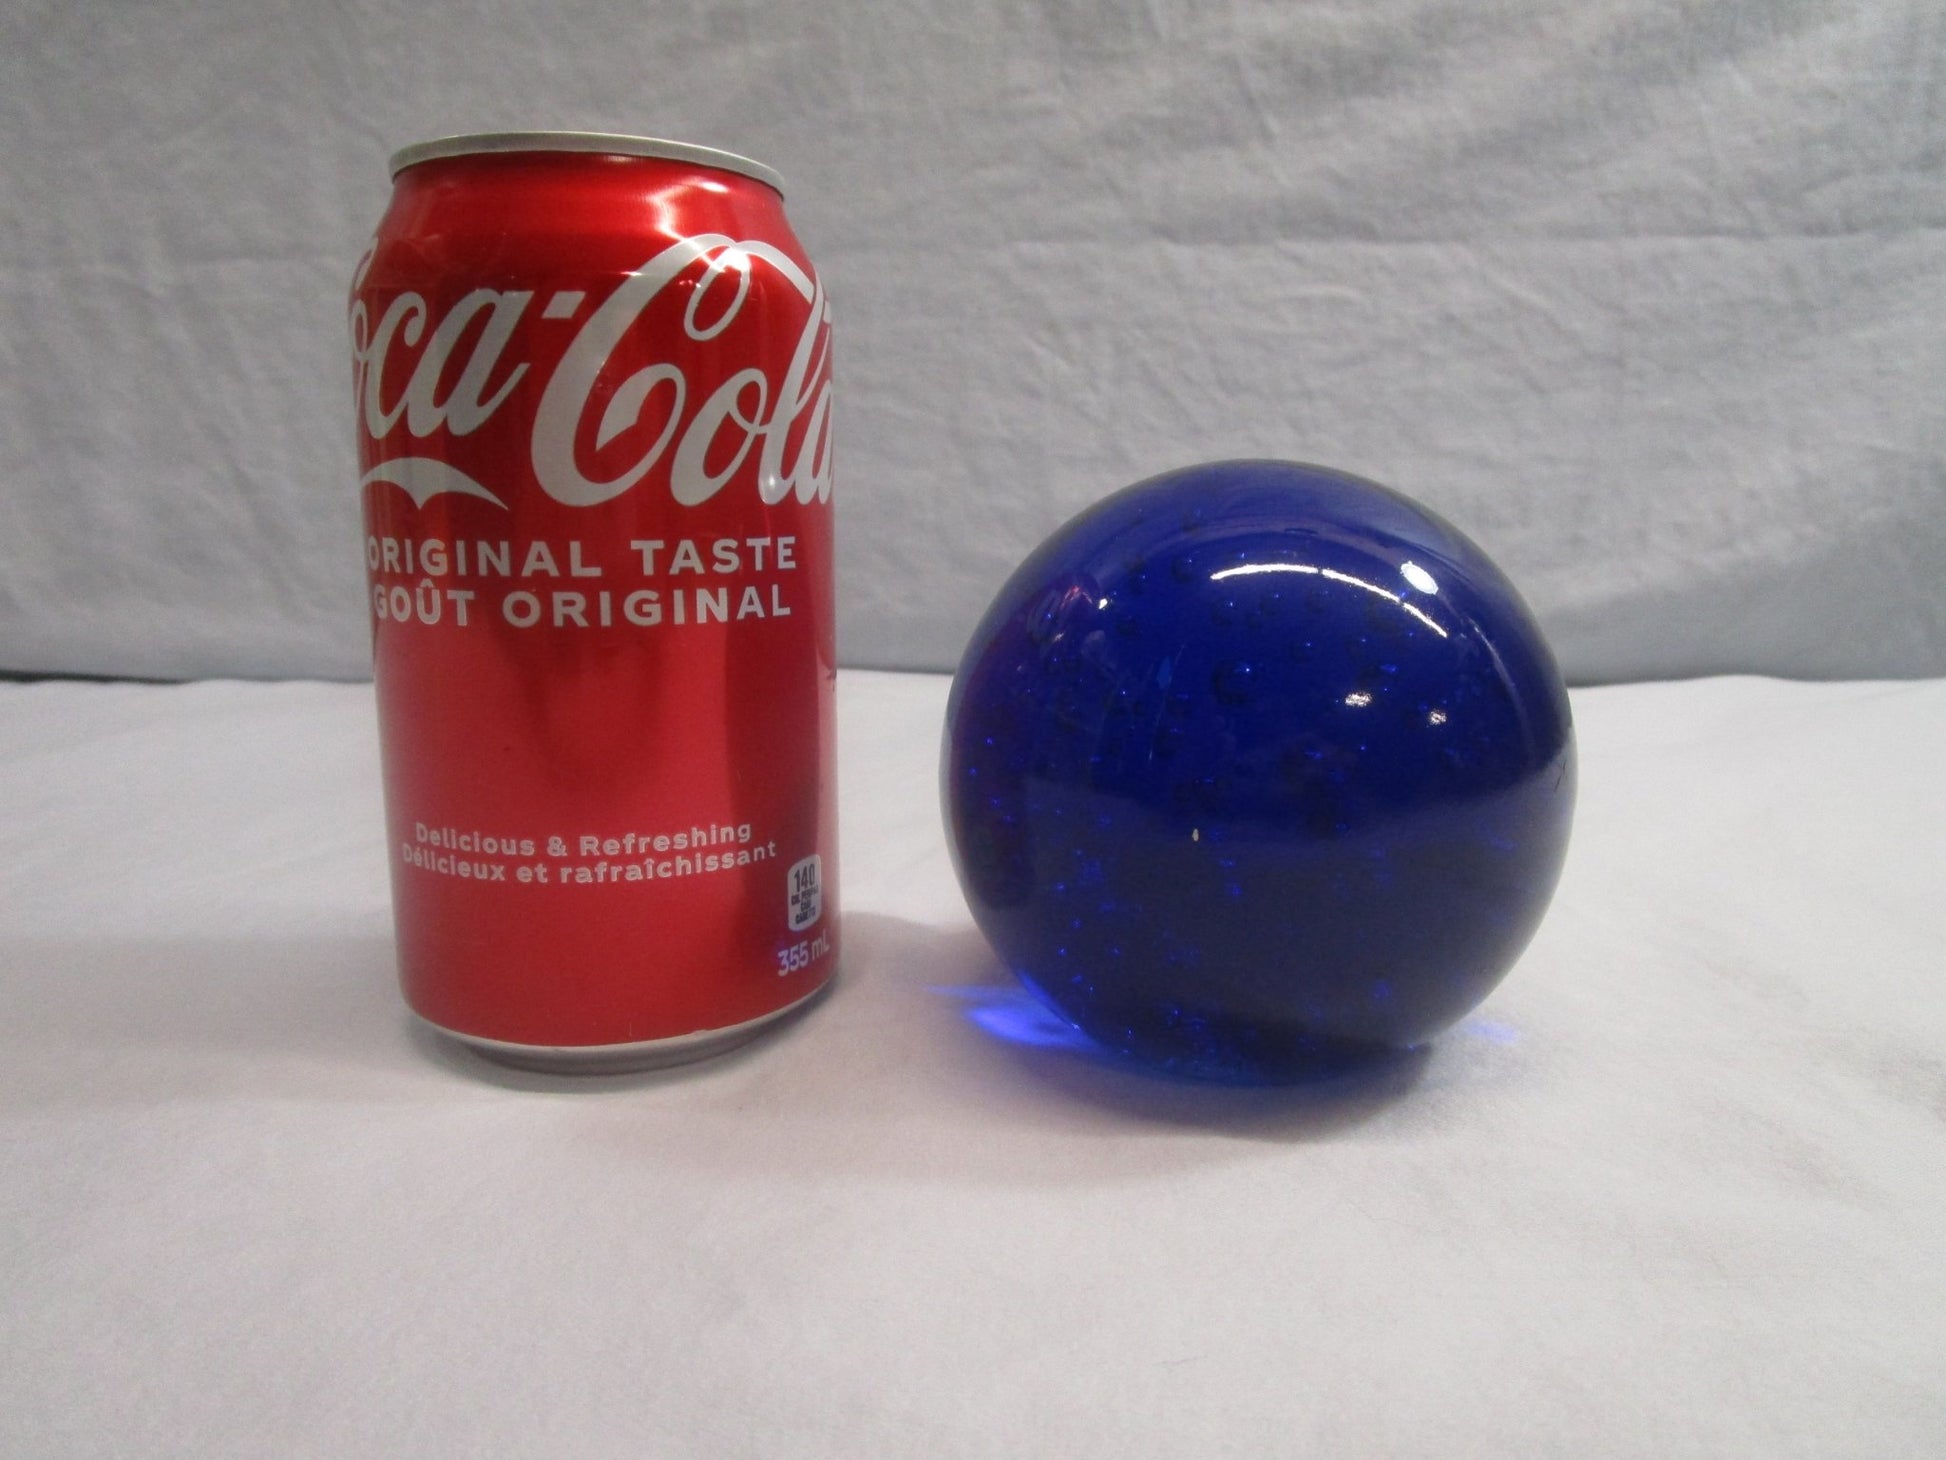 Cobalt Blue Art Glass Paperweight [82316 - Cactus Jax Unique Collectibles